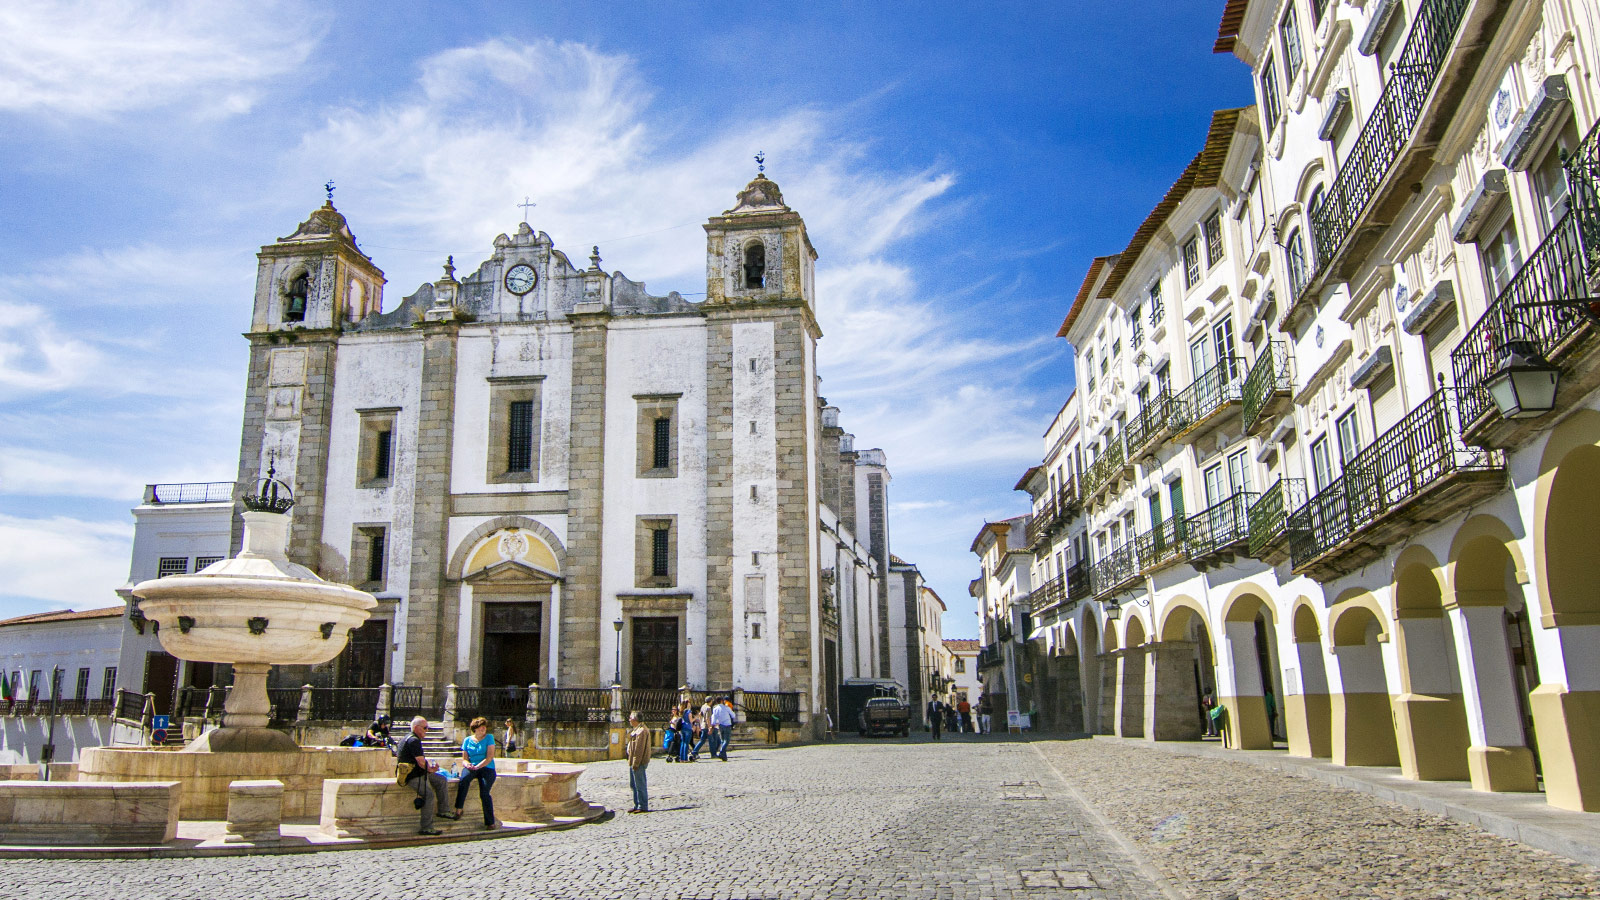 The main square of Evora, Portugal